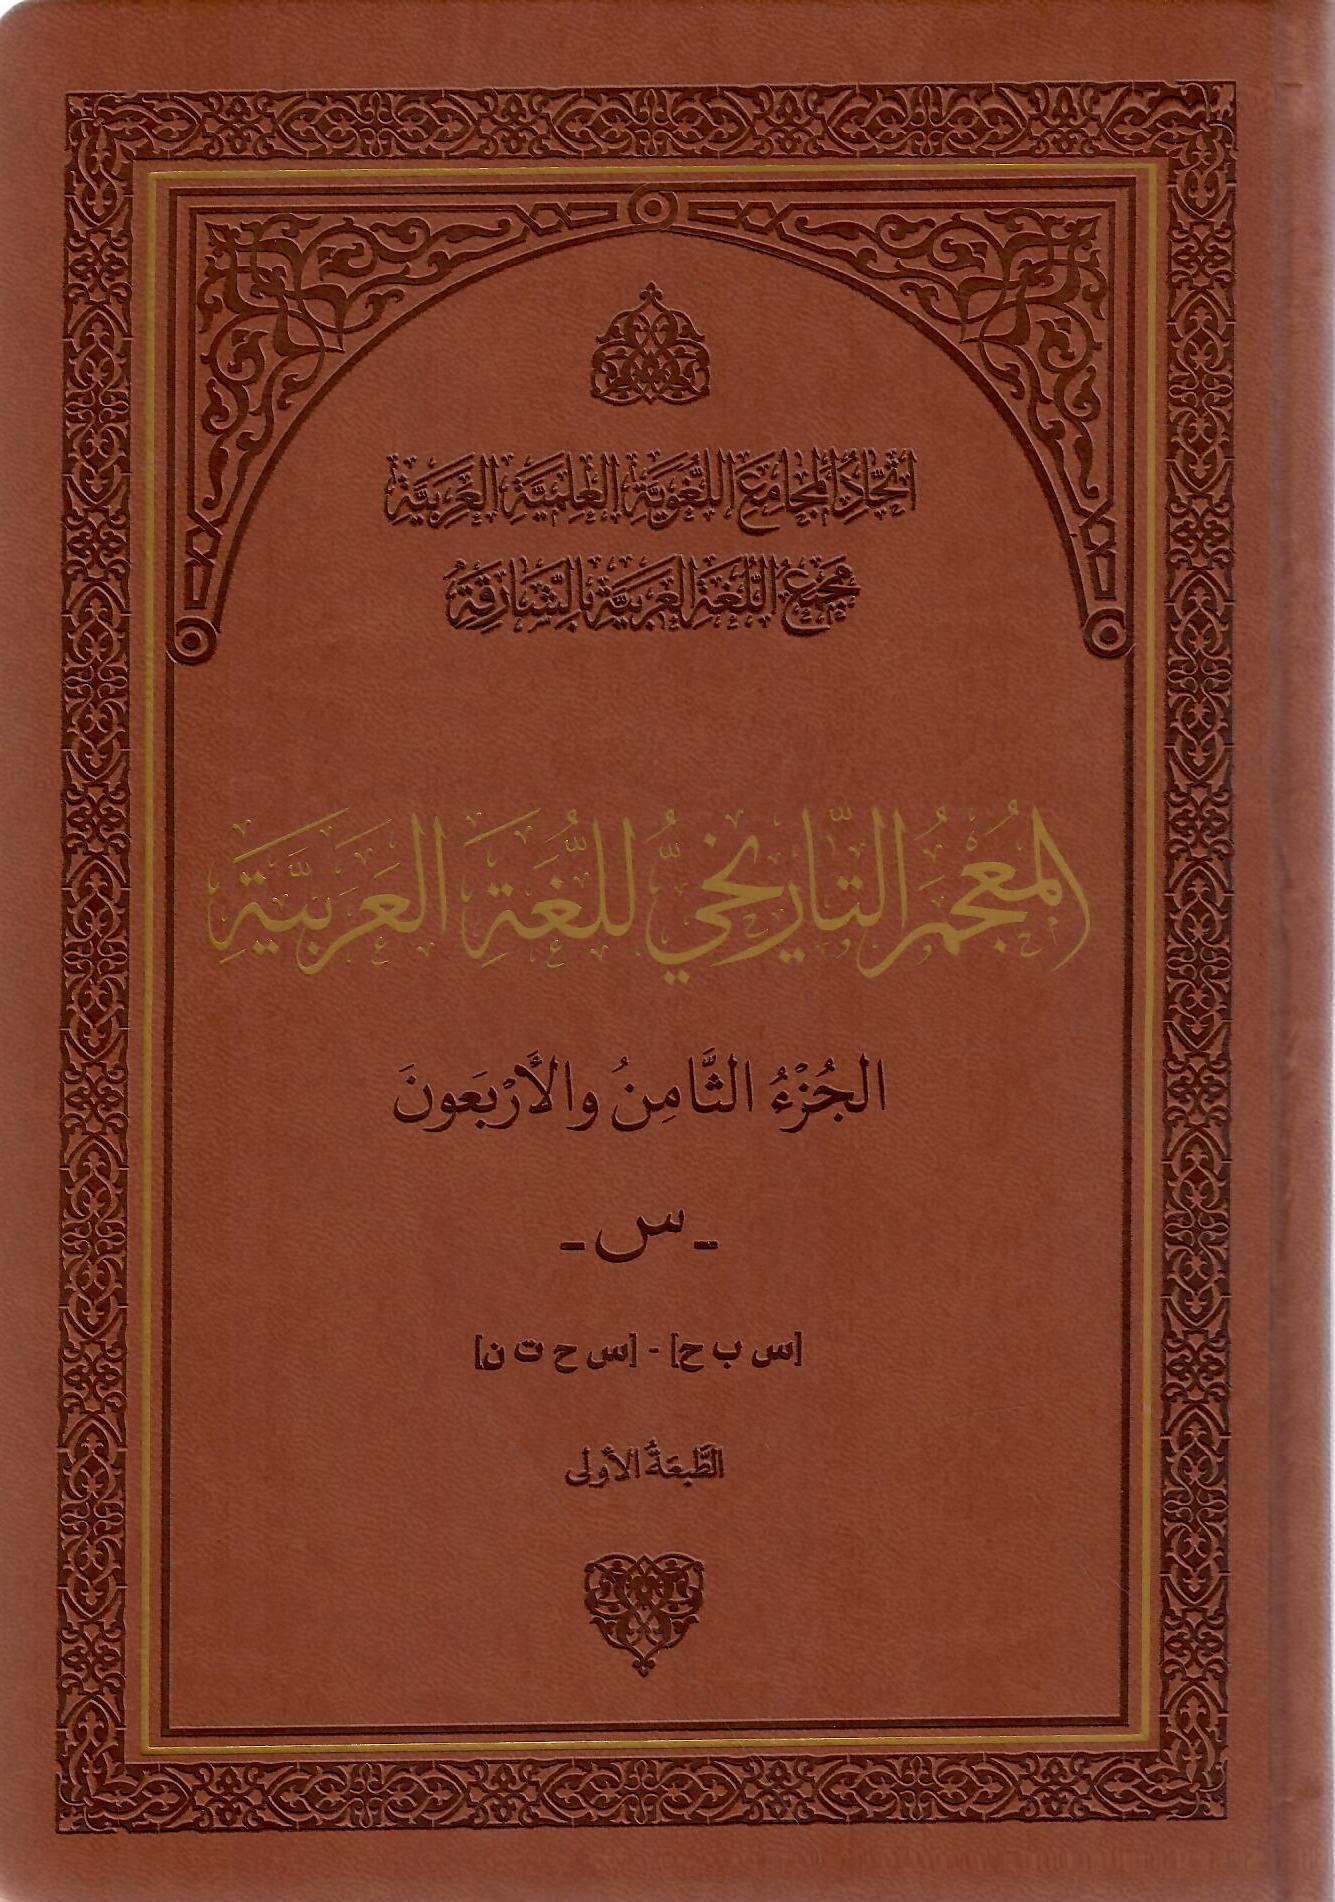 المعجم التاريخي للغة العربية الجزء الثامن والأربعون